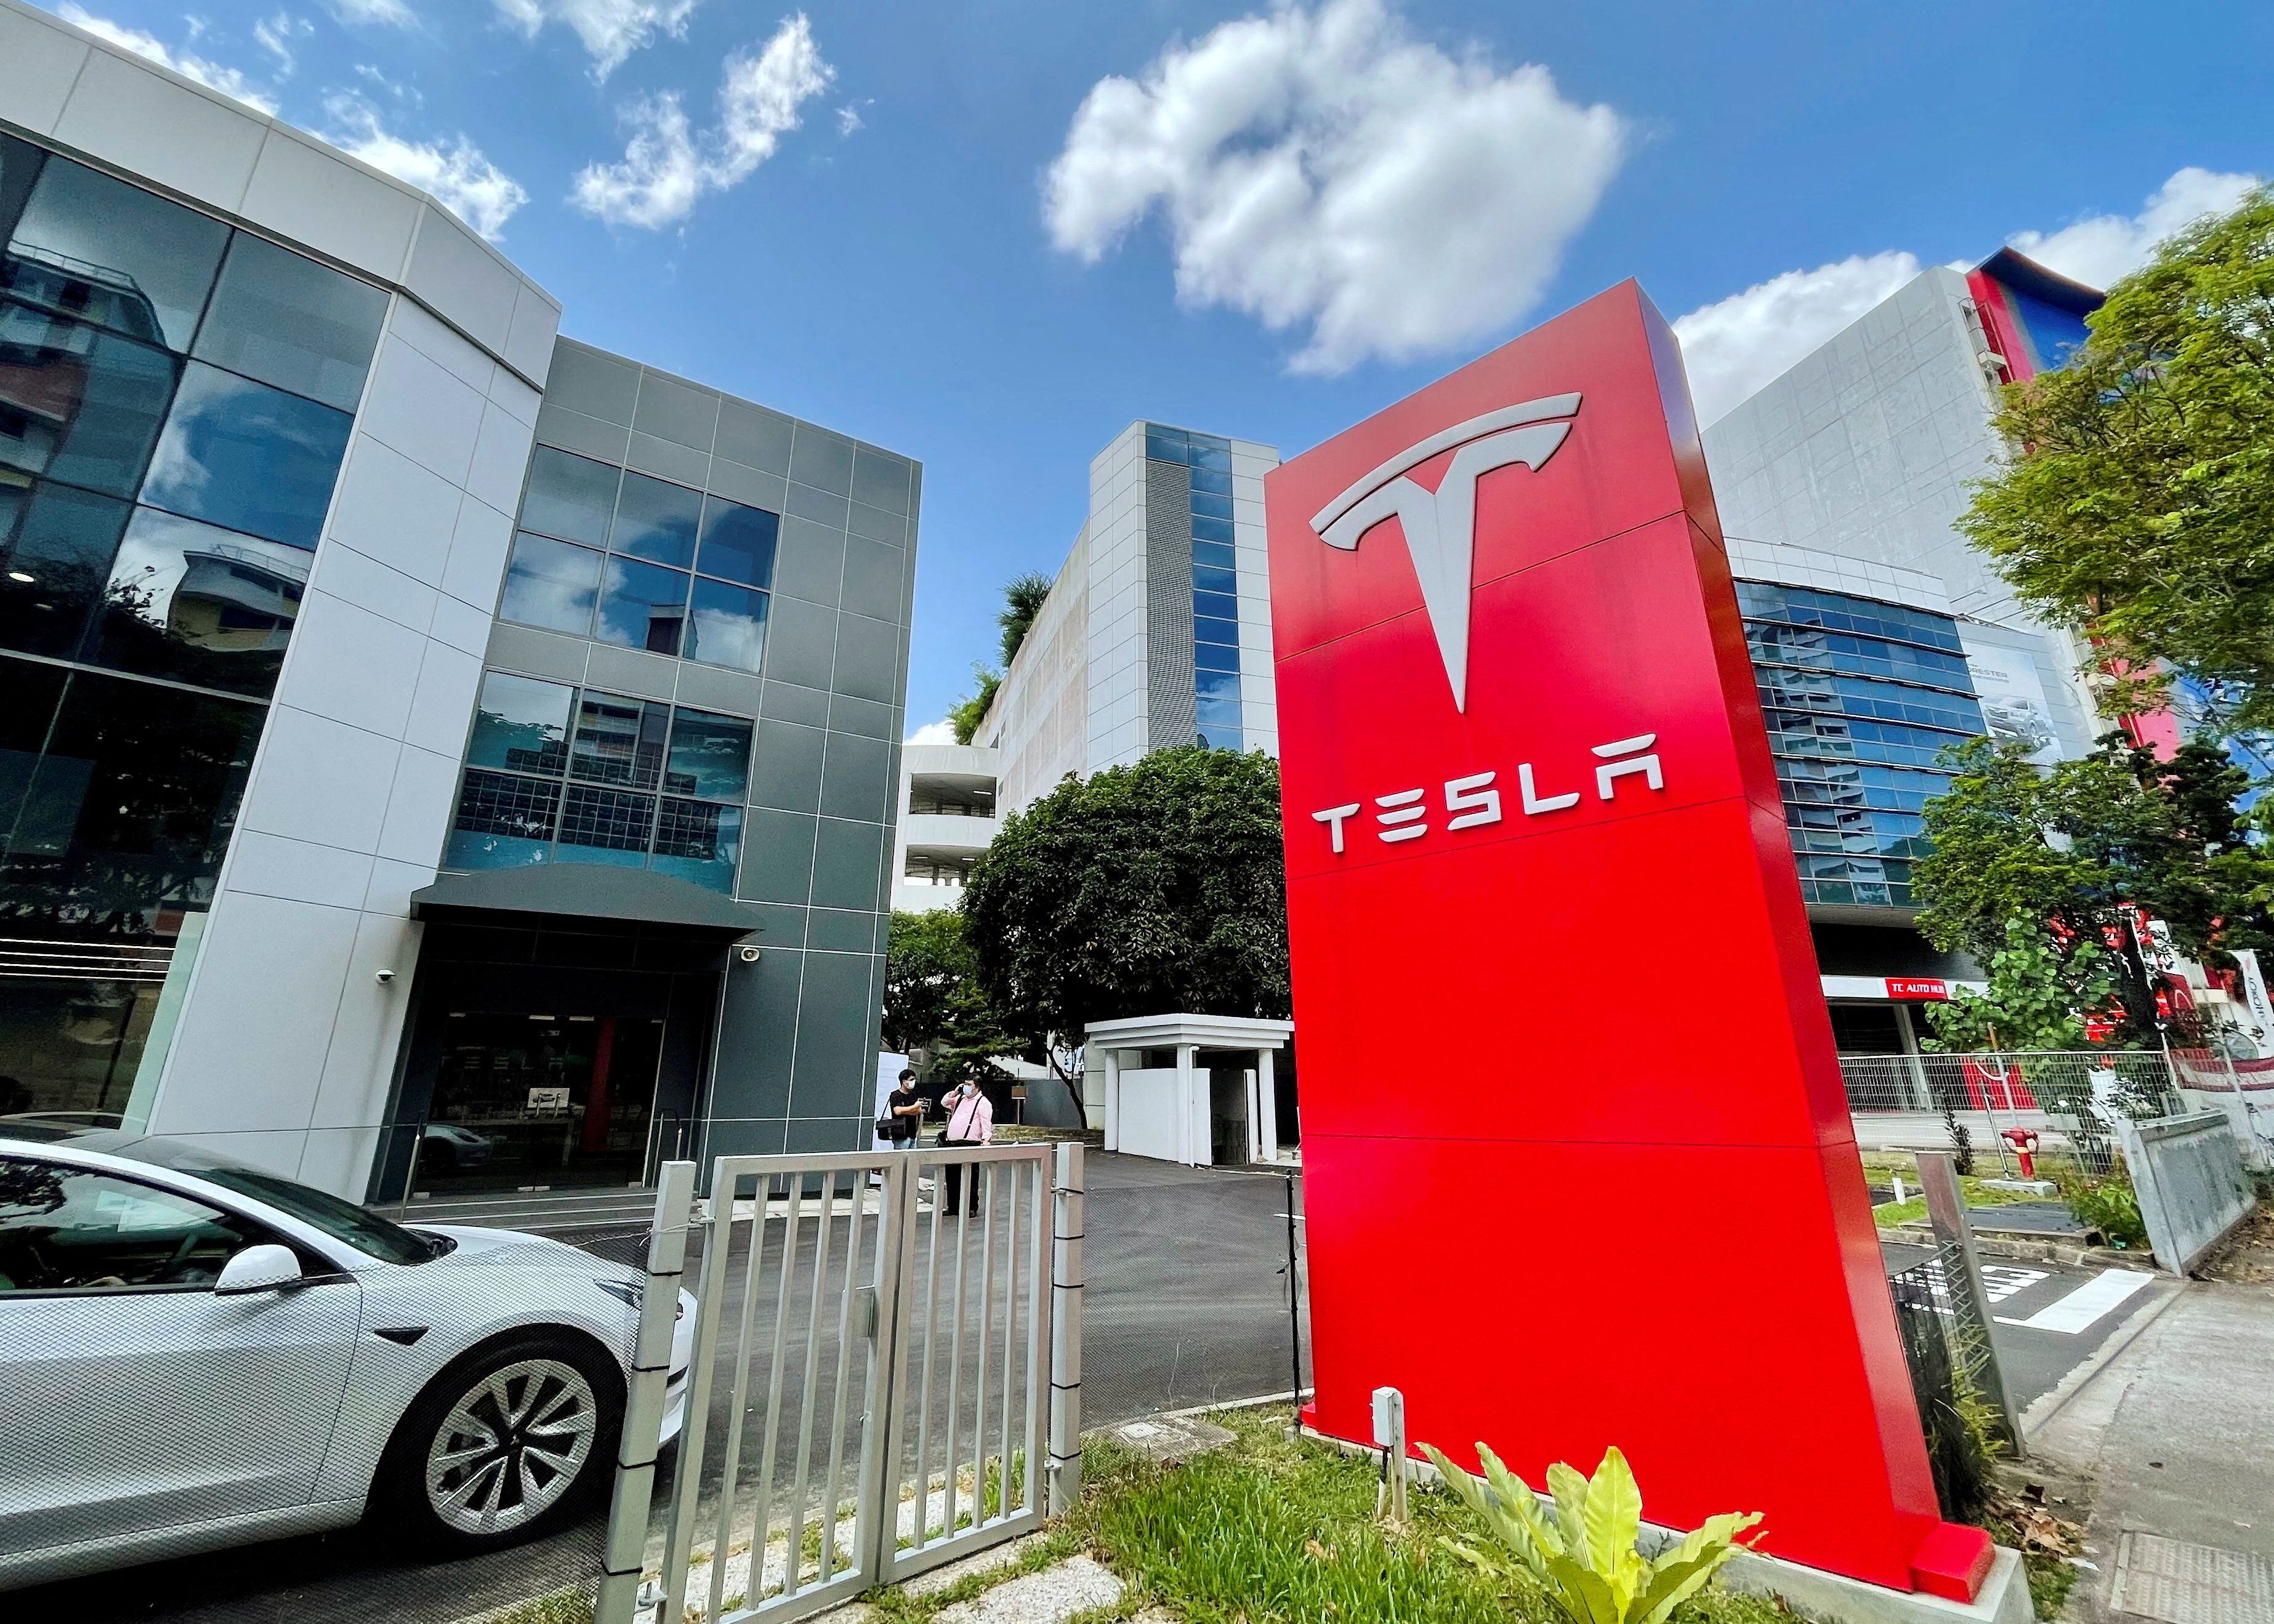 Los planes de Musk para Tesla
Reuters
